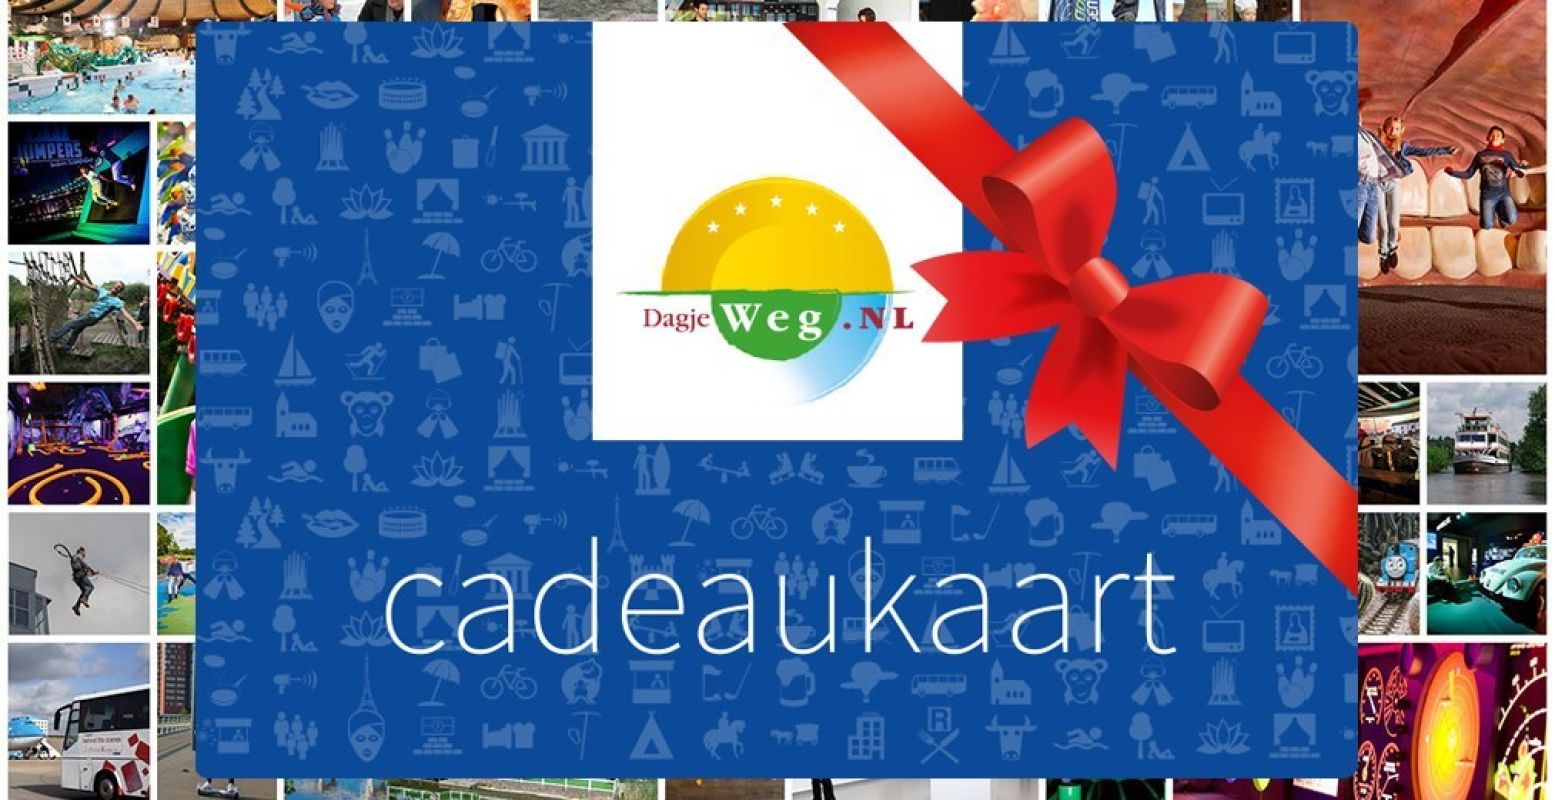 De DagjeWeg.NL Tickets Cadeaukaart geeft gratis toegang tot tientallen uitjes. Foto: DagjeWeg.NL.